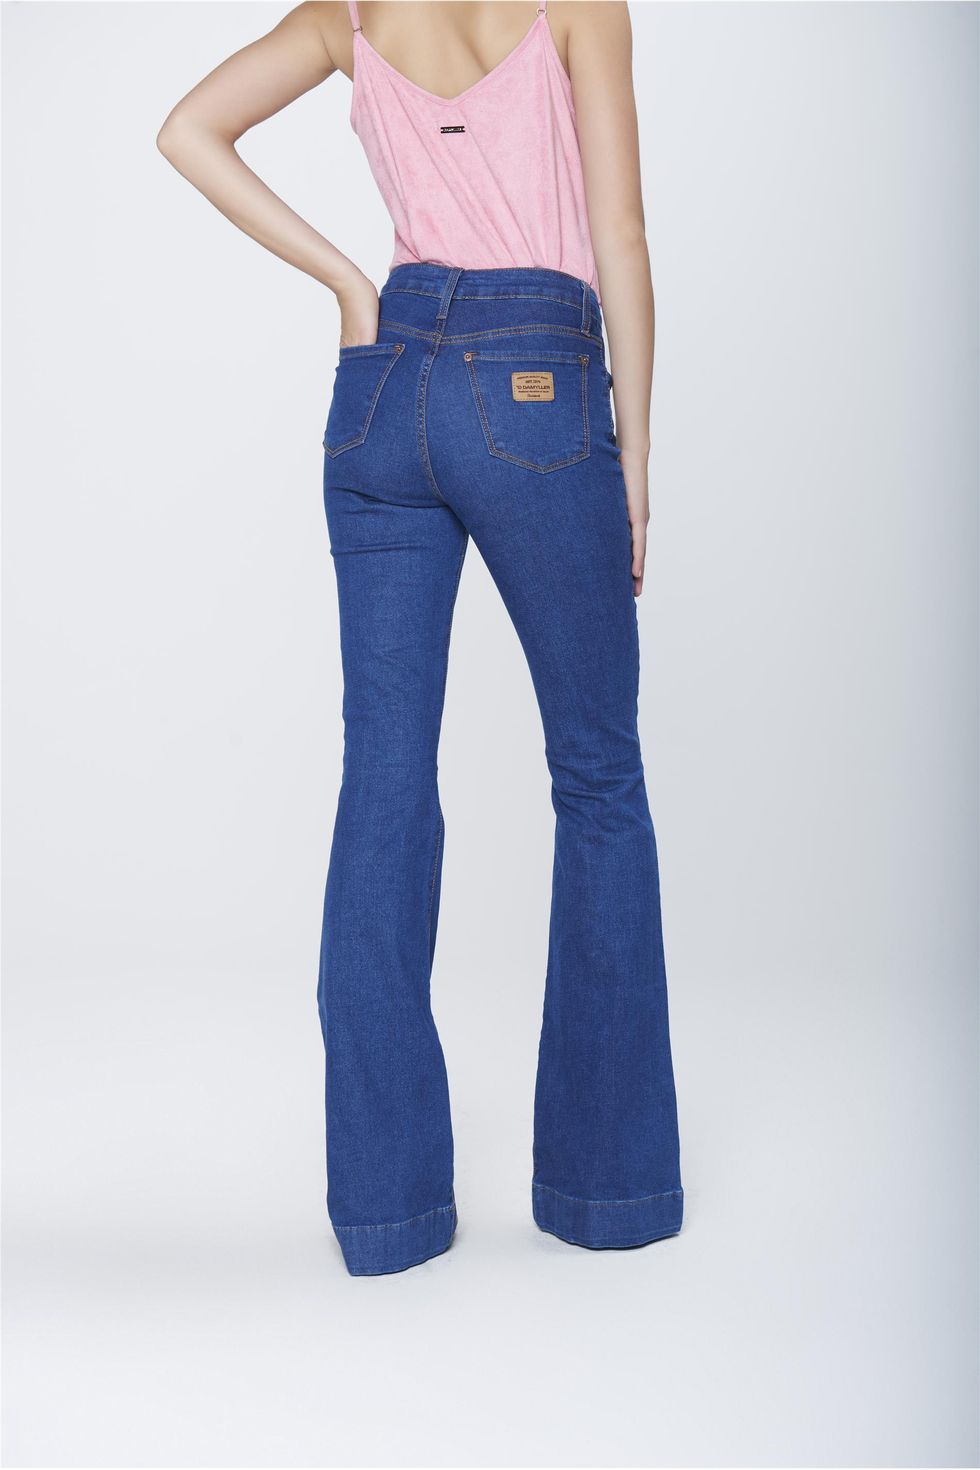 jeans flare cintura alta